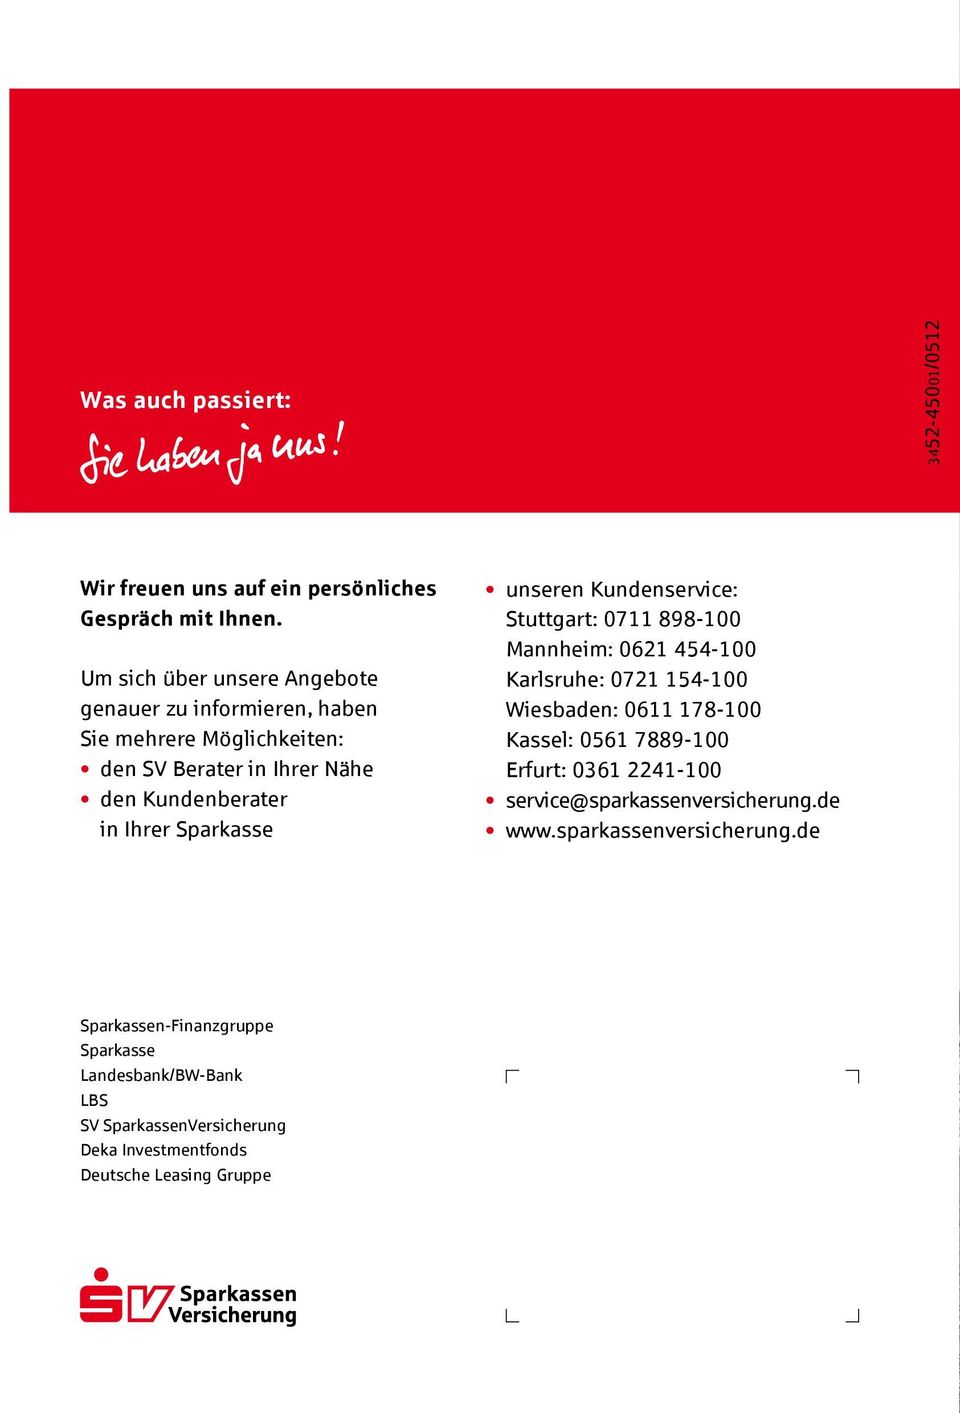 Sparkasse unseren Kundenservice: Stuttgart: 0711 898-100 Mannheim: 0621 454-100 Karlsruhe: 0721 154-100 Wiesbaden: 0611 178-100 Kassel: 0561